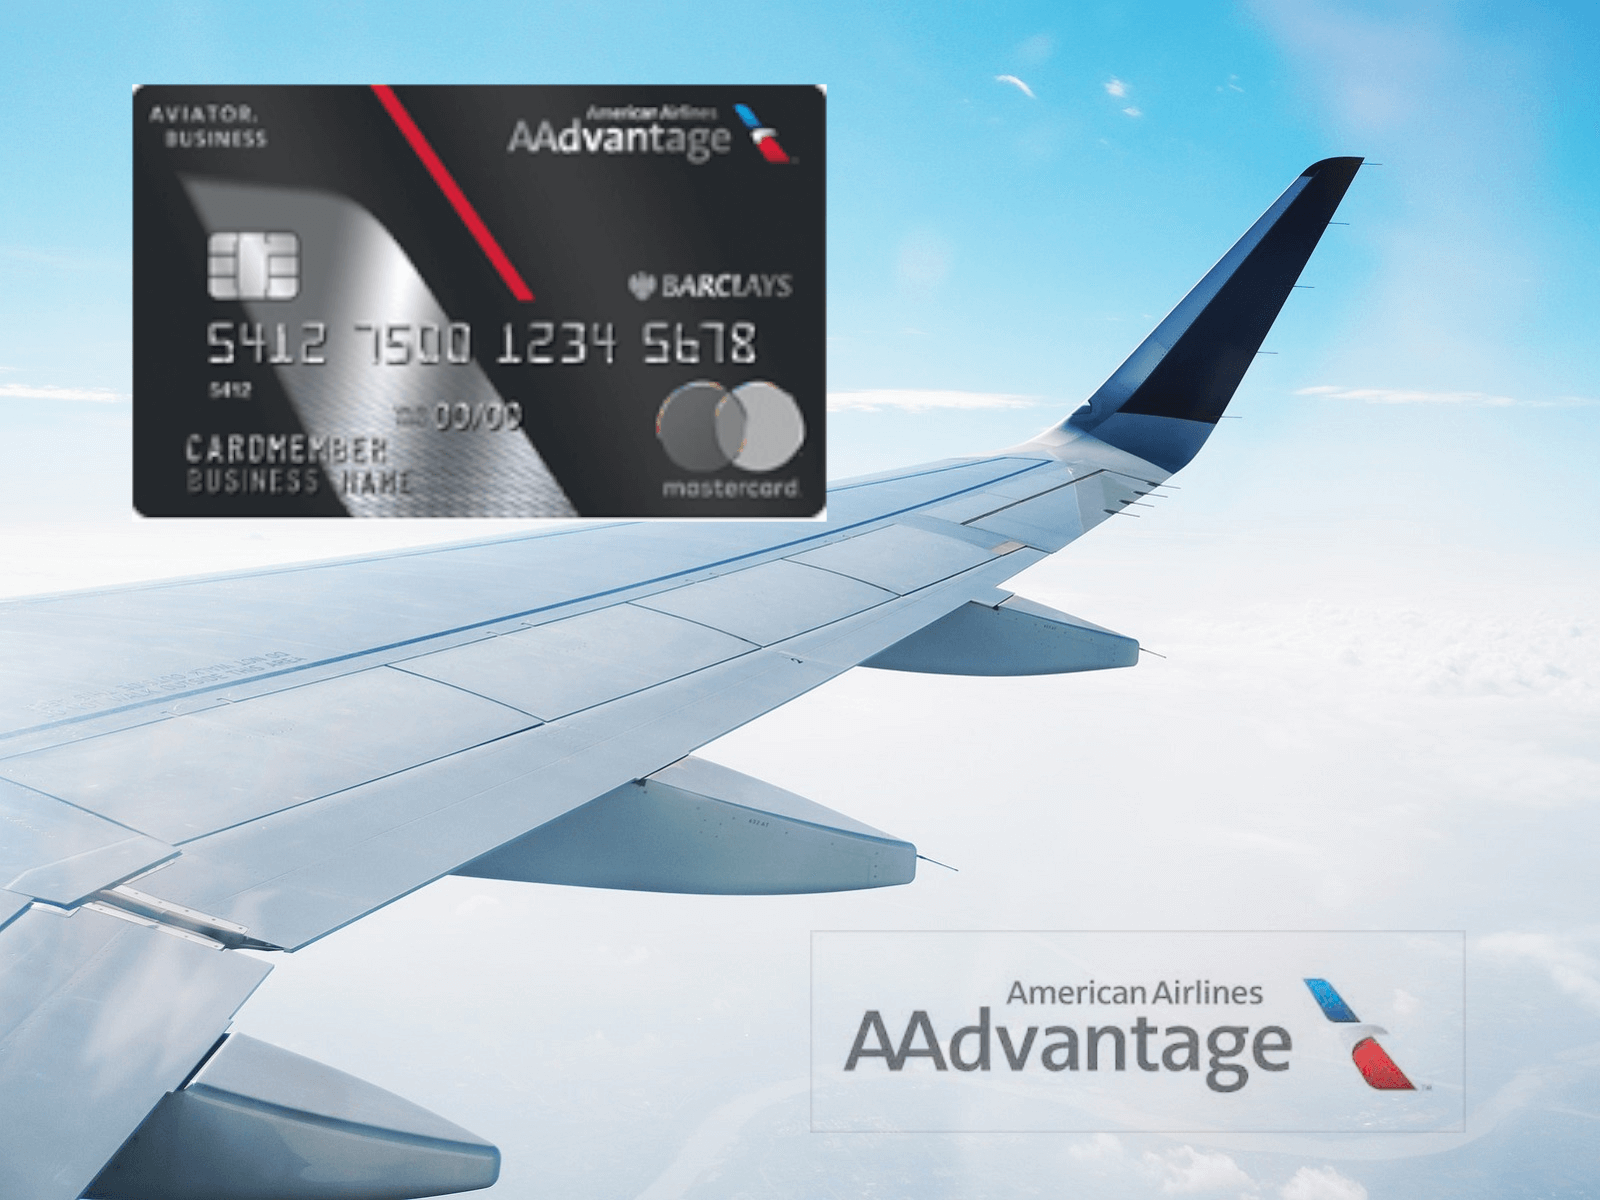 aadvantage aviator travel insurance